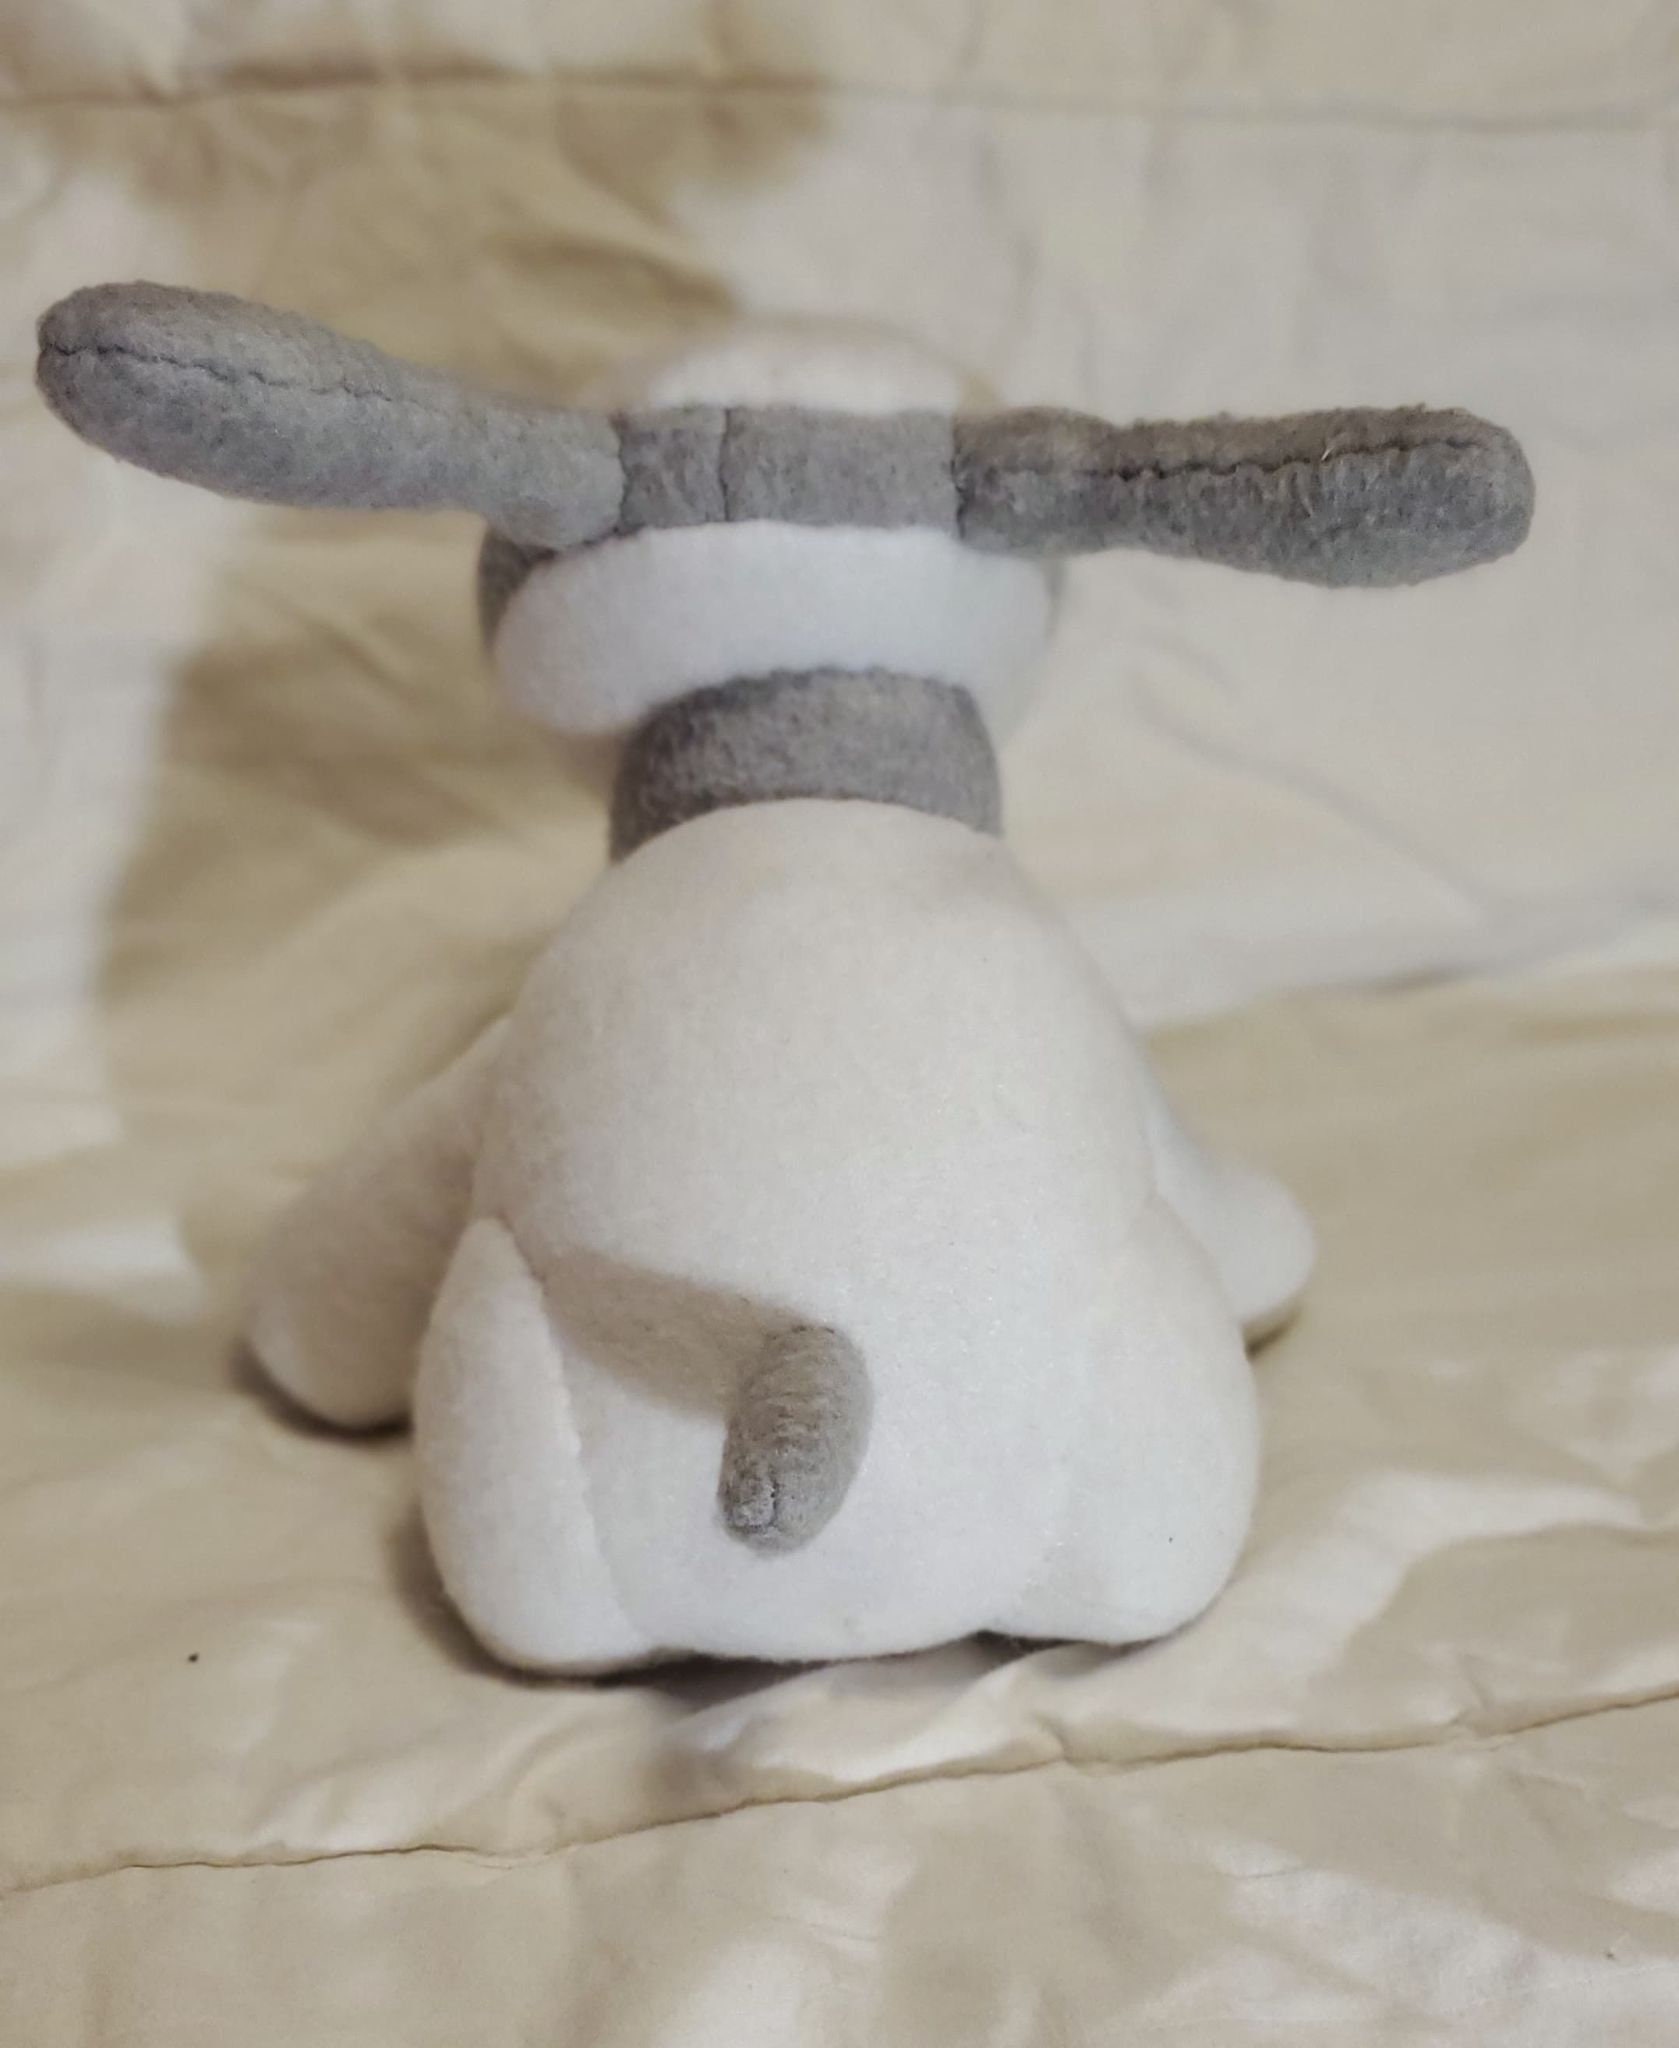 recreating a vintage stuffed animal - iDooodle